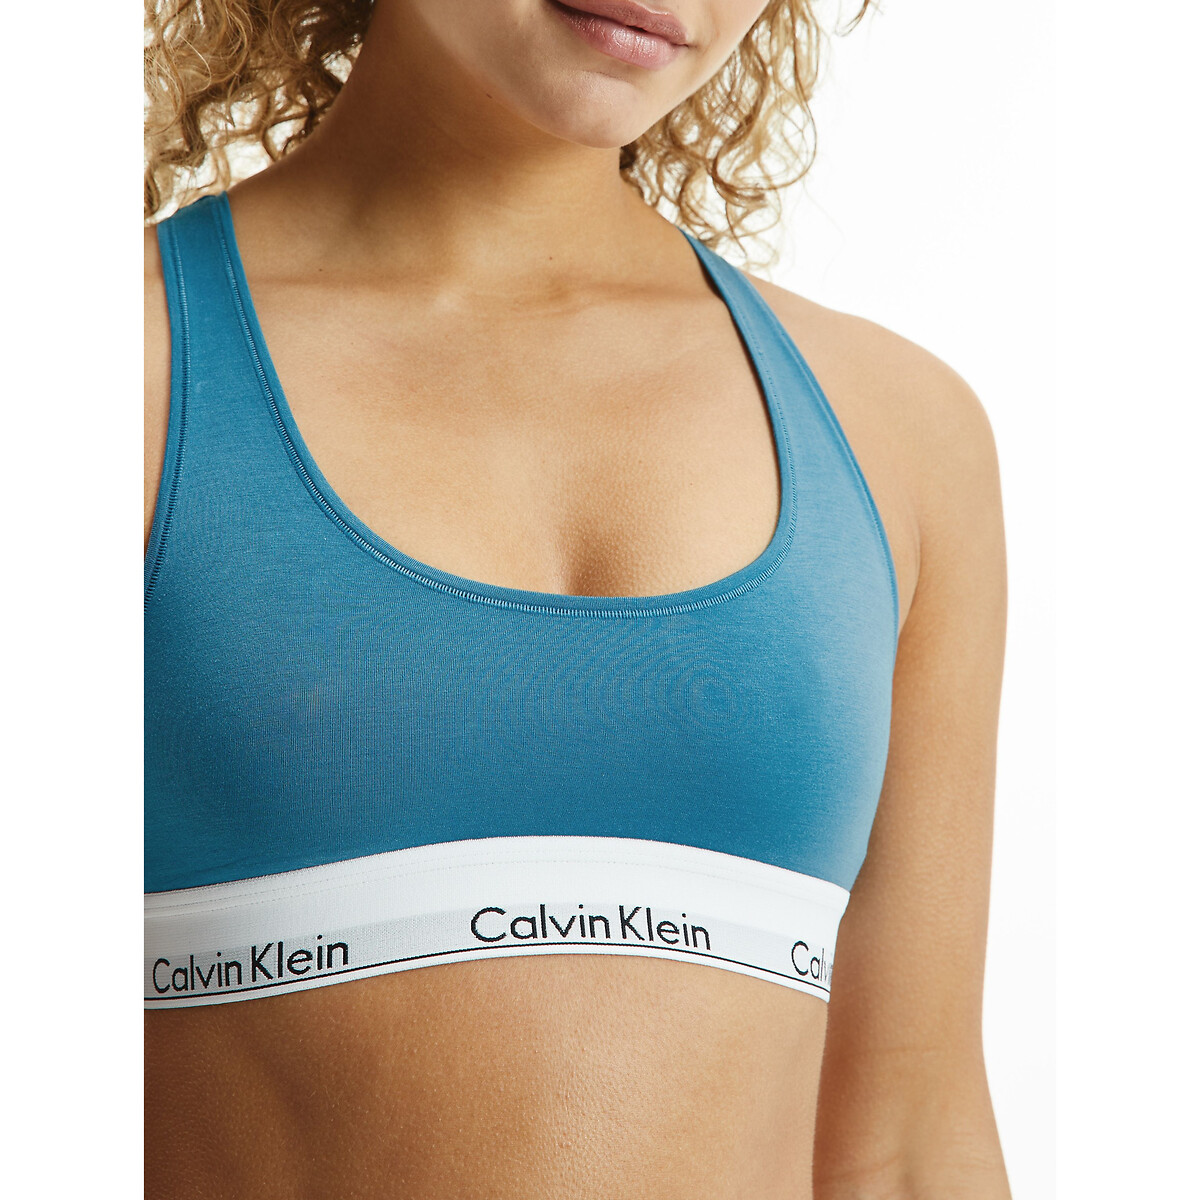 Bustier-bh modern cotton türkis Calvin Klein Underwear | La Redoute